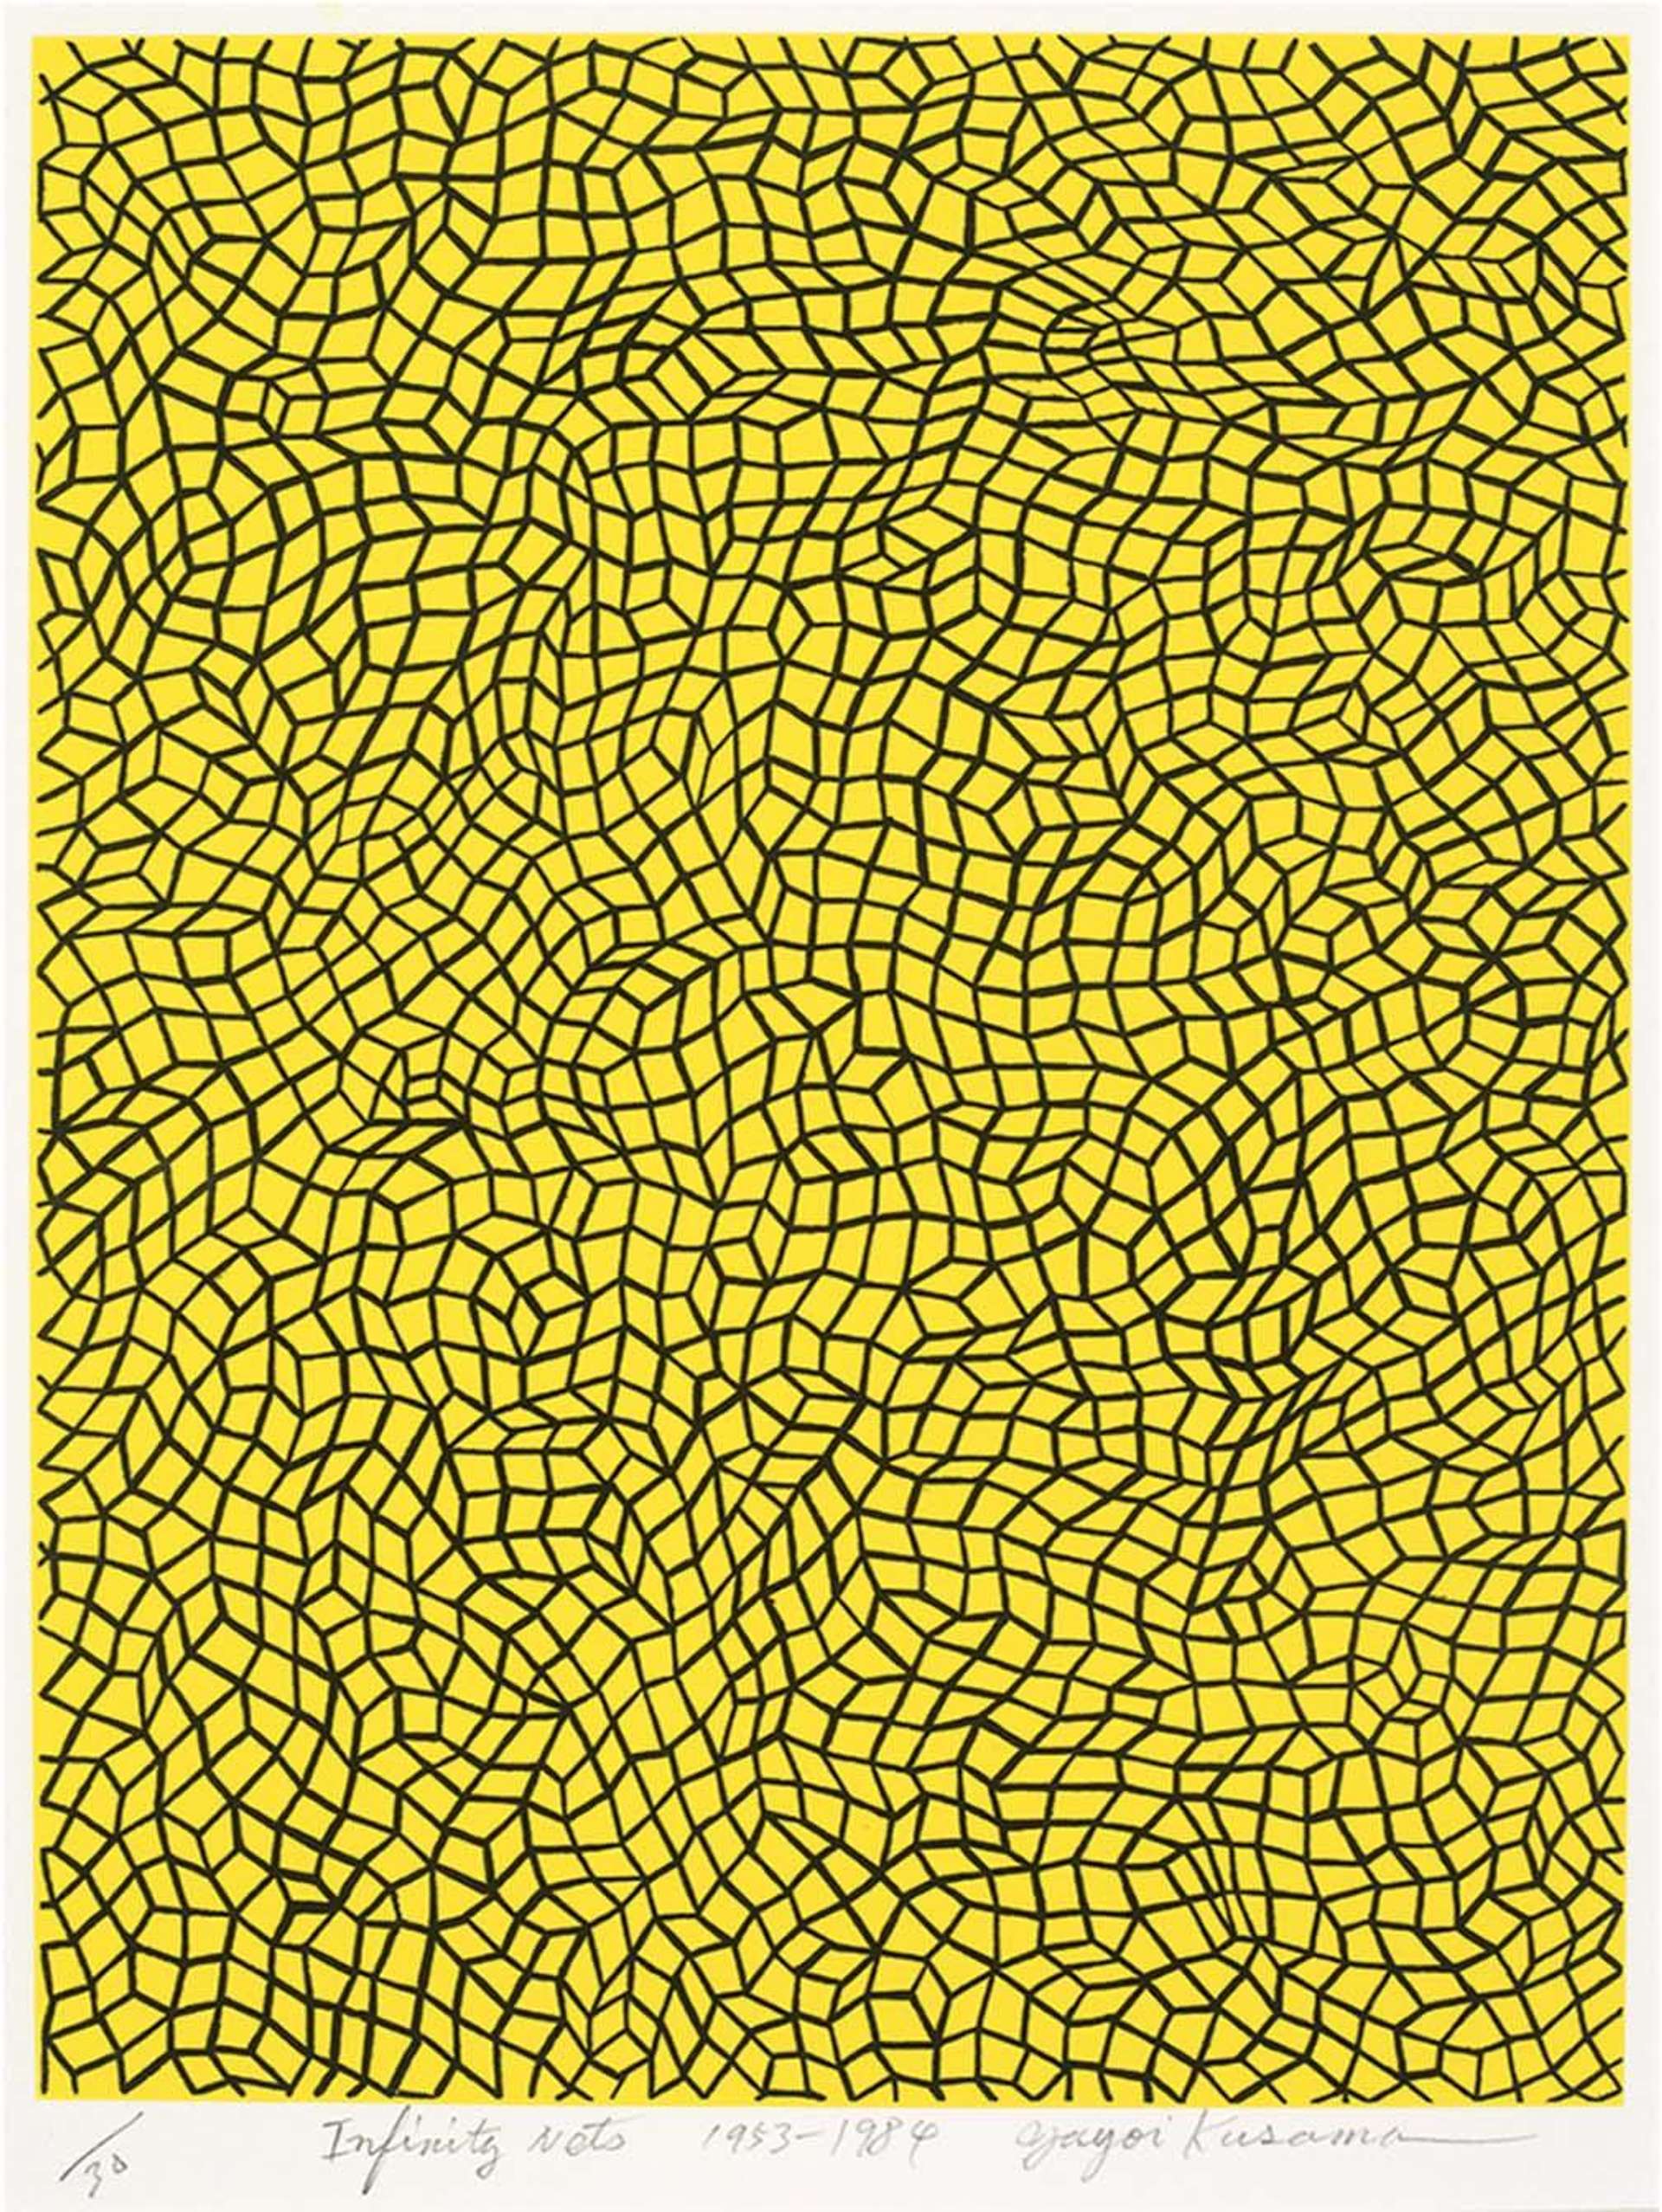 Yayomi Kusama's Infinity Nets. A lithograph of black, geometric patterns over a yellow background. 